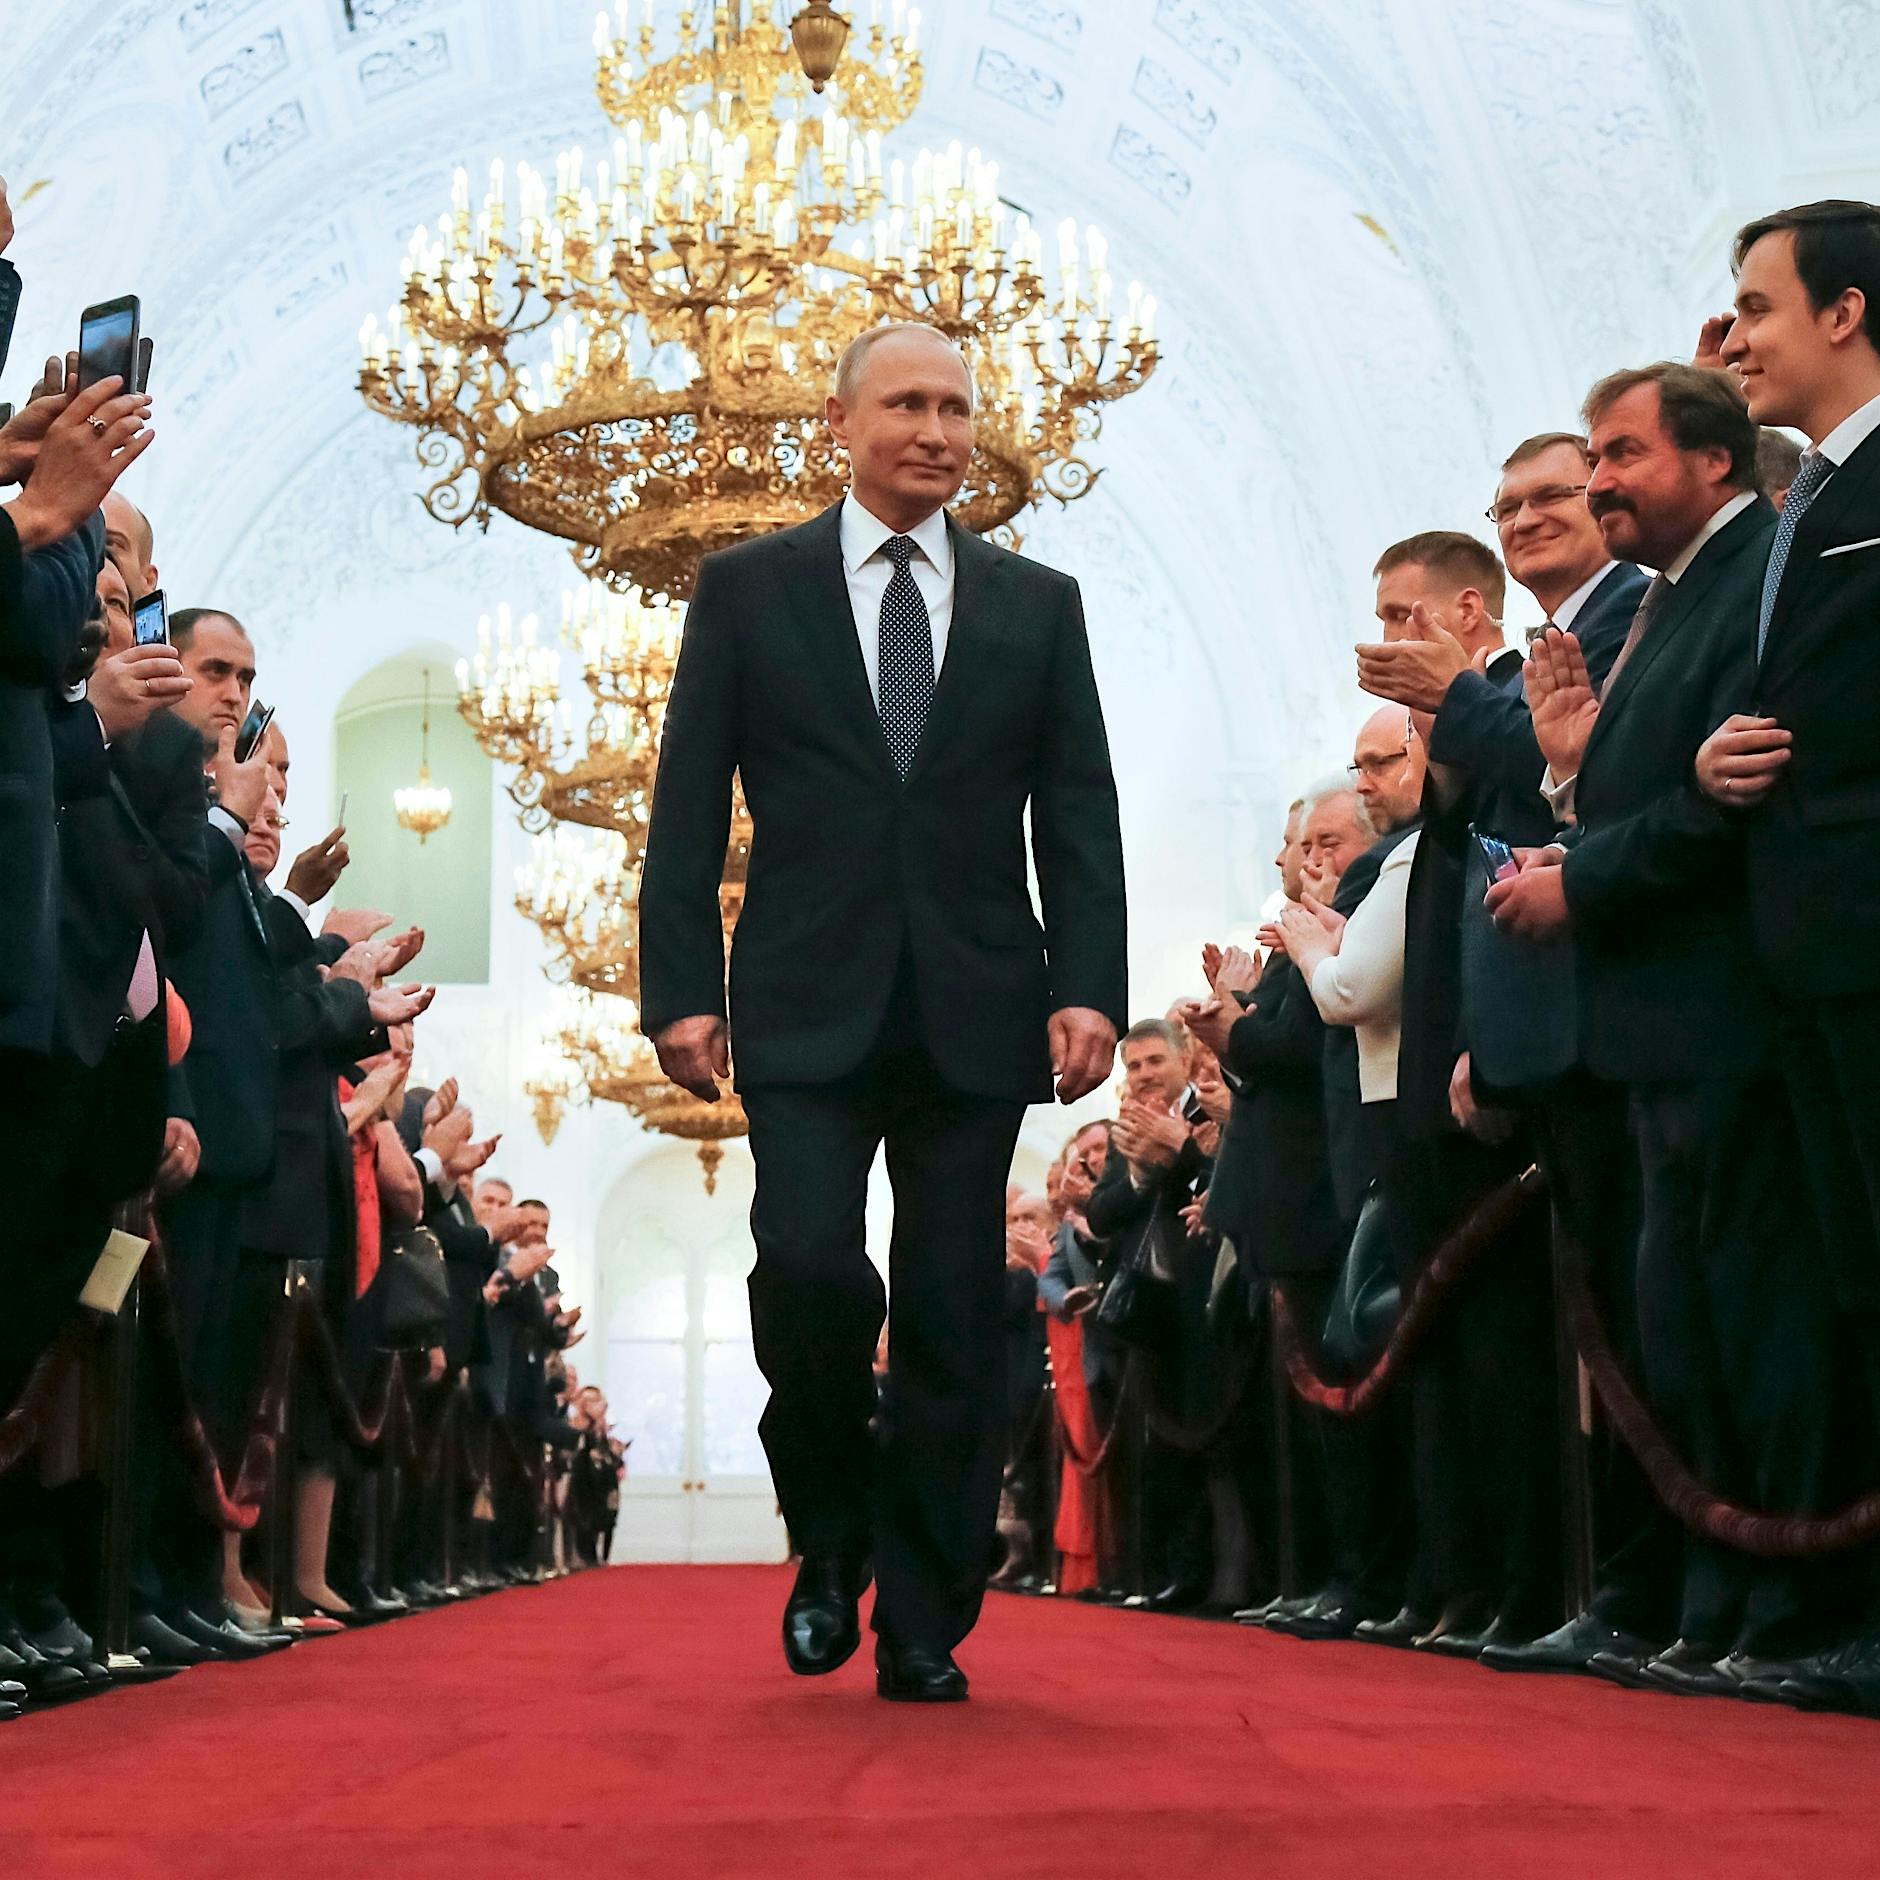 Wladimir Putin zur Amtseinführung: Russland will multipolare Weltordnung